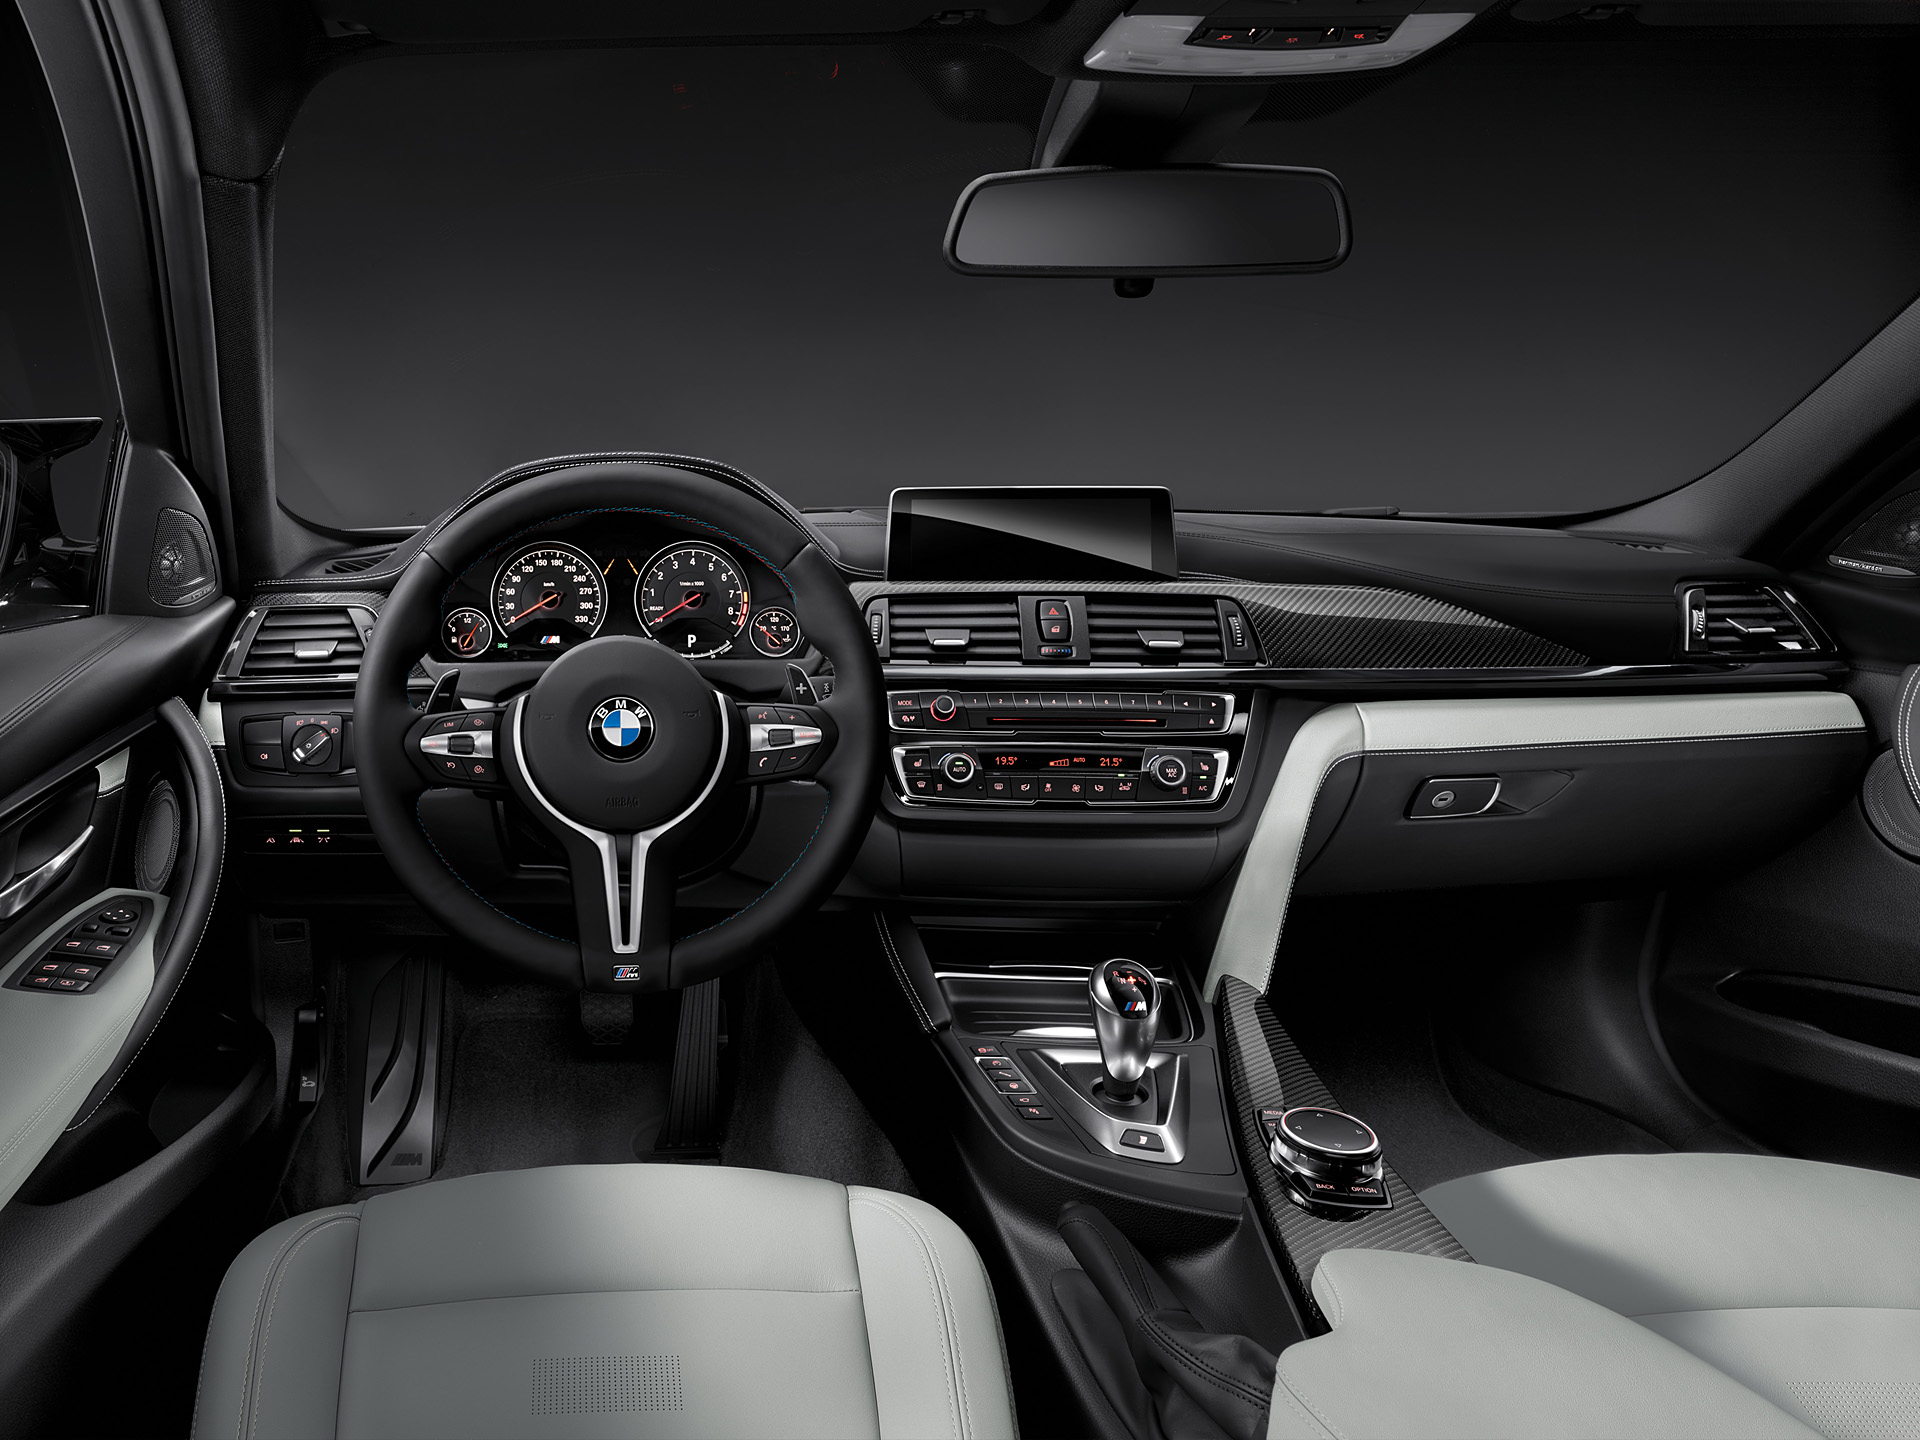  2015 BMW M3 Sedan Wallpaper.